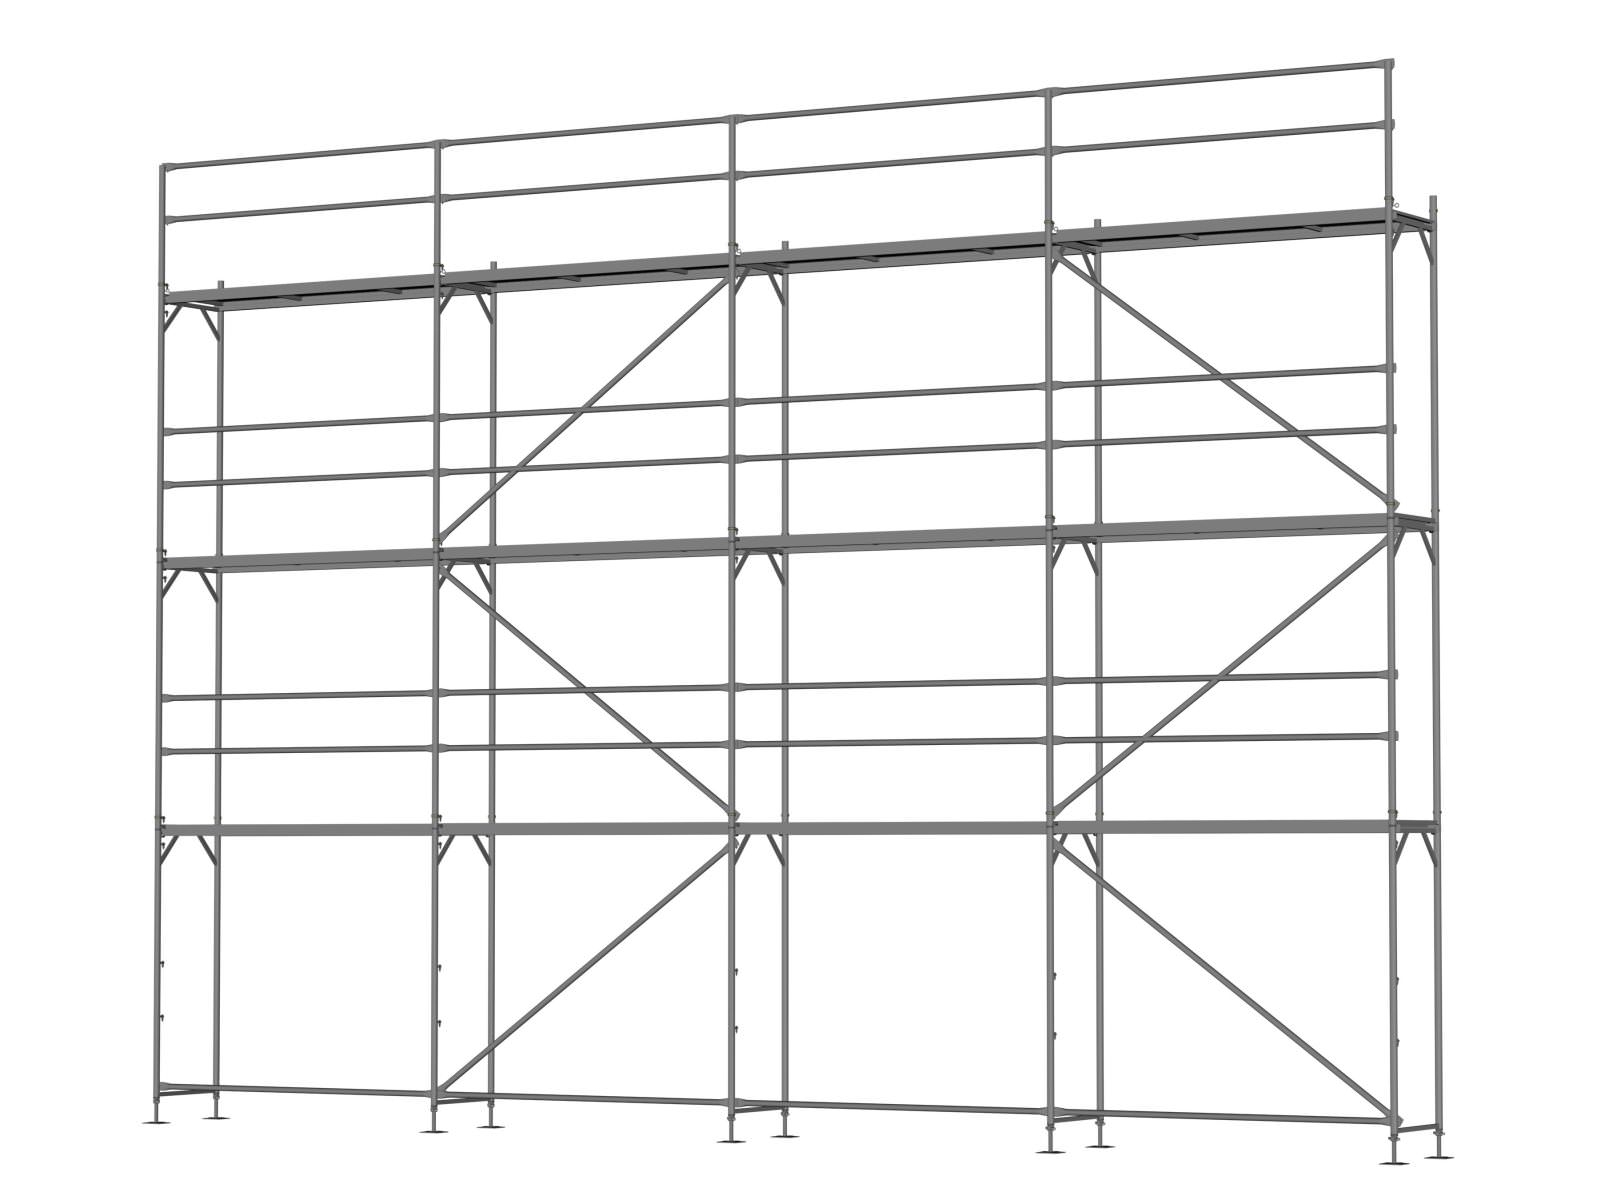 Stahl Traufseitengerüst 80 qm - 2,5 m Felder - 10 m lang - 8 m Arbeitshöhe - Basis-Gerüst